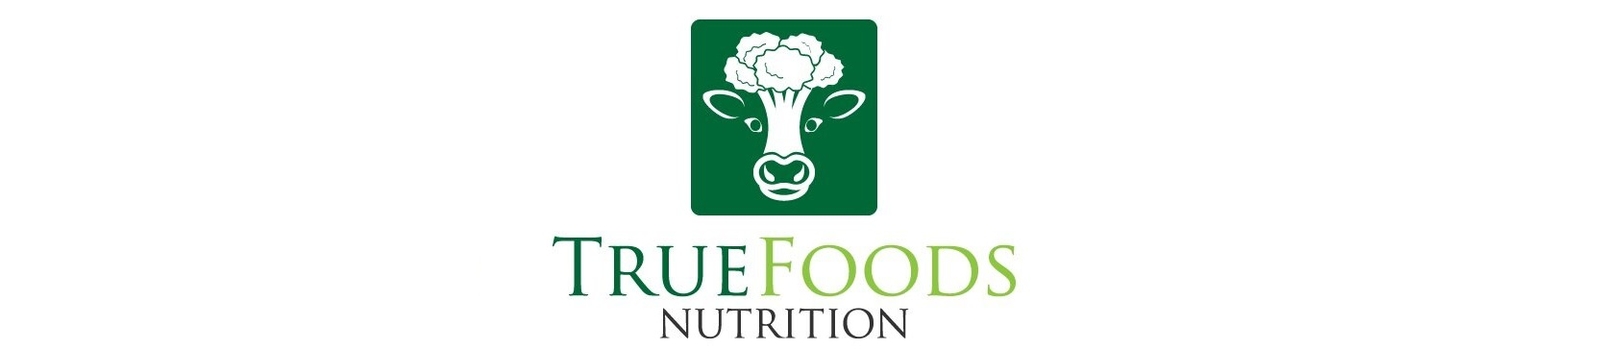 True Foods Nutrition